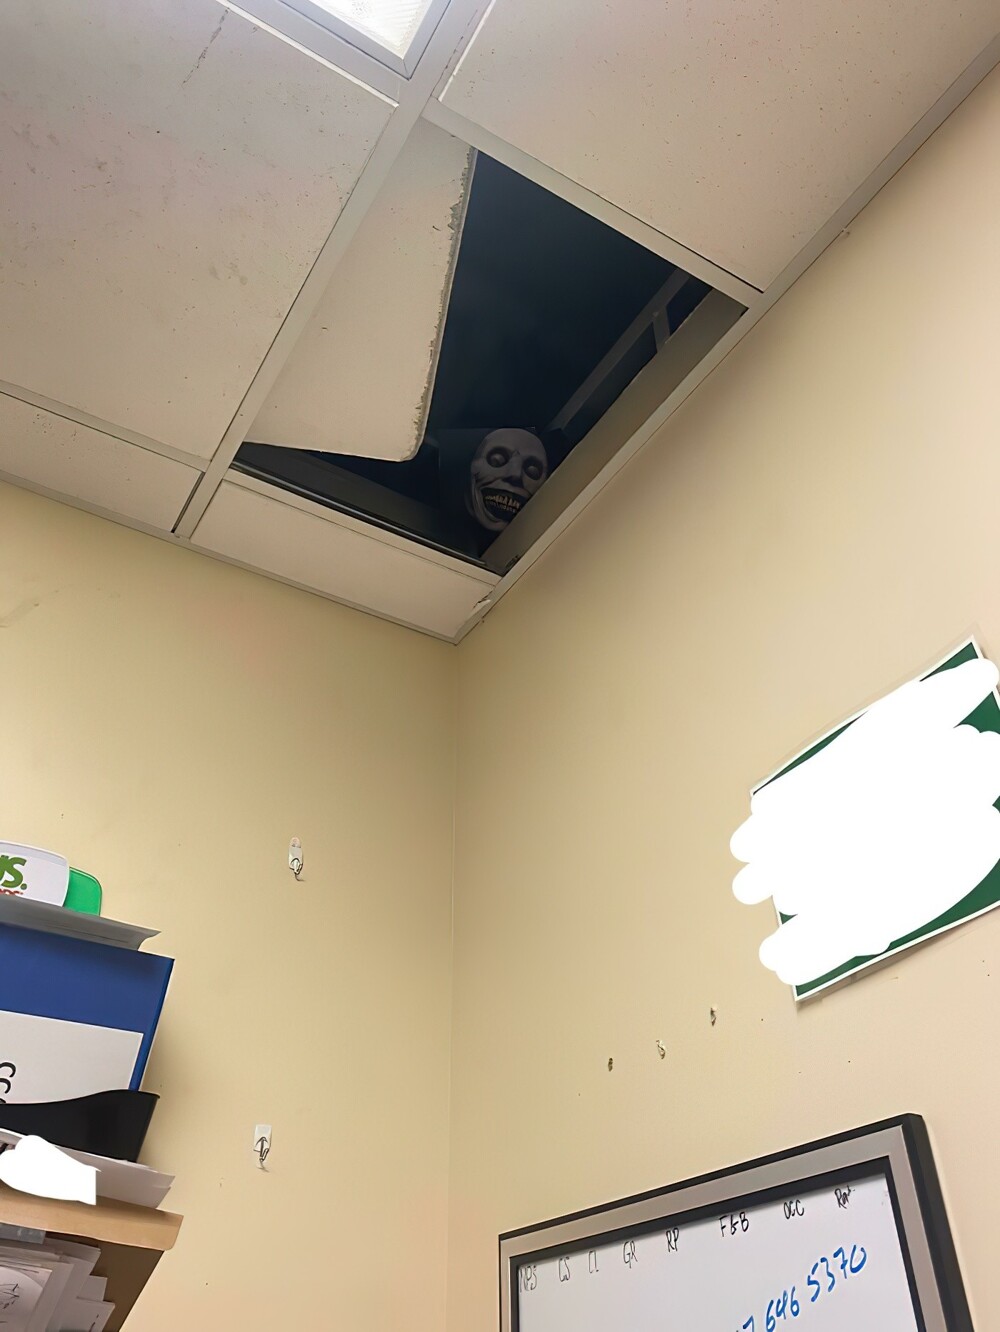 9. «Недели две назад в офисе зачем-то сдвинули плитку на потолке и так оставили. Я решил немного повеселиться»